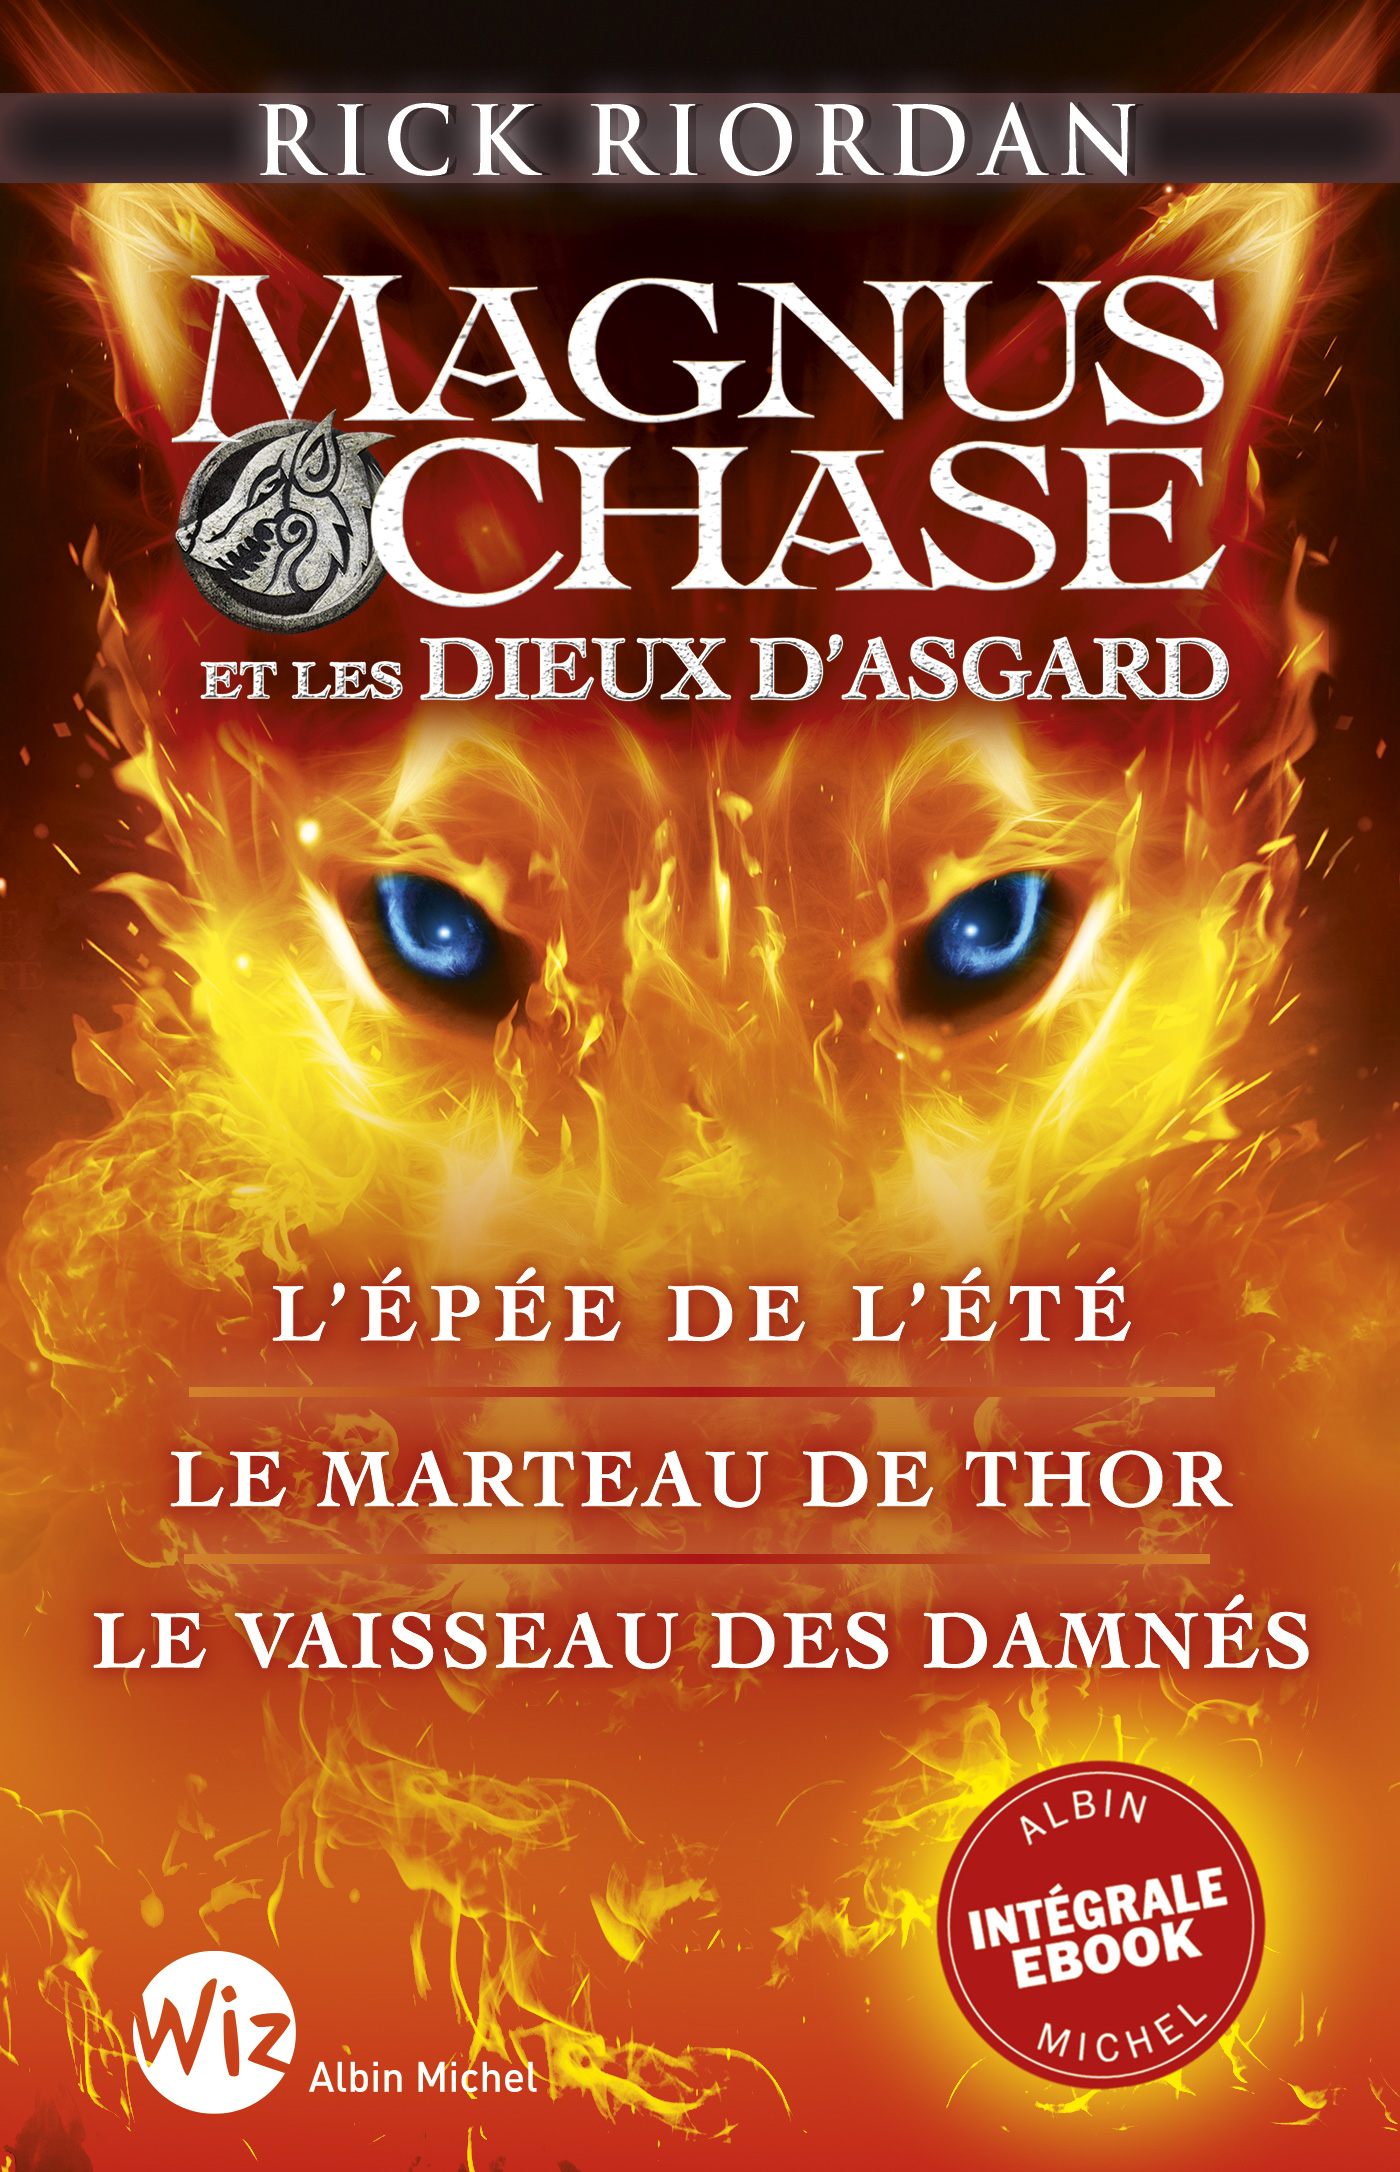 Couverture du livre Trilogie Magnus Chase et les Dieux d'Asgard - Intégrale